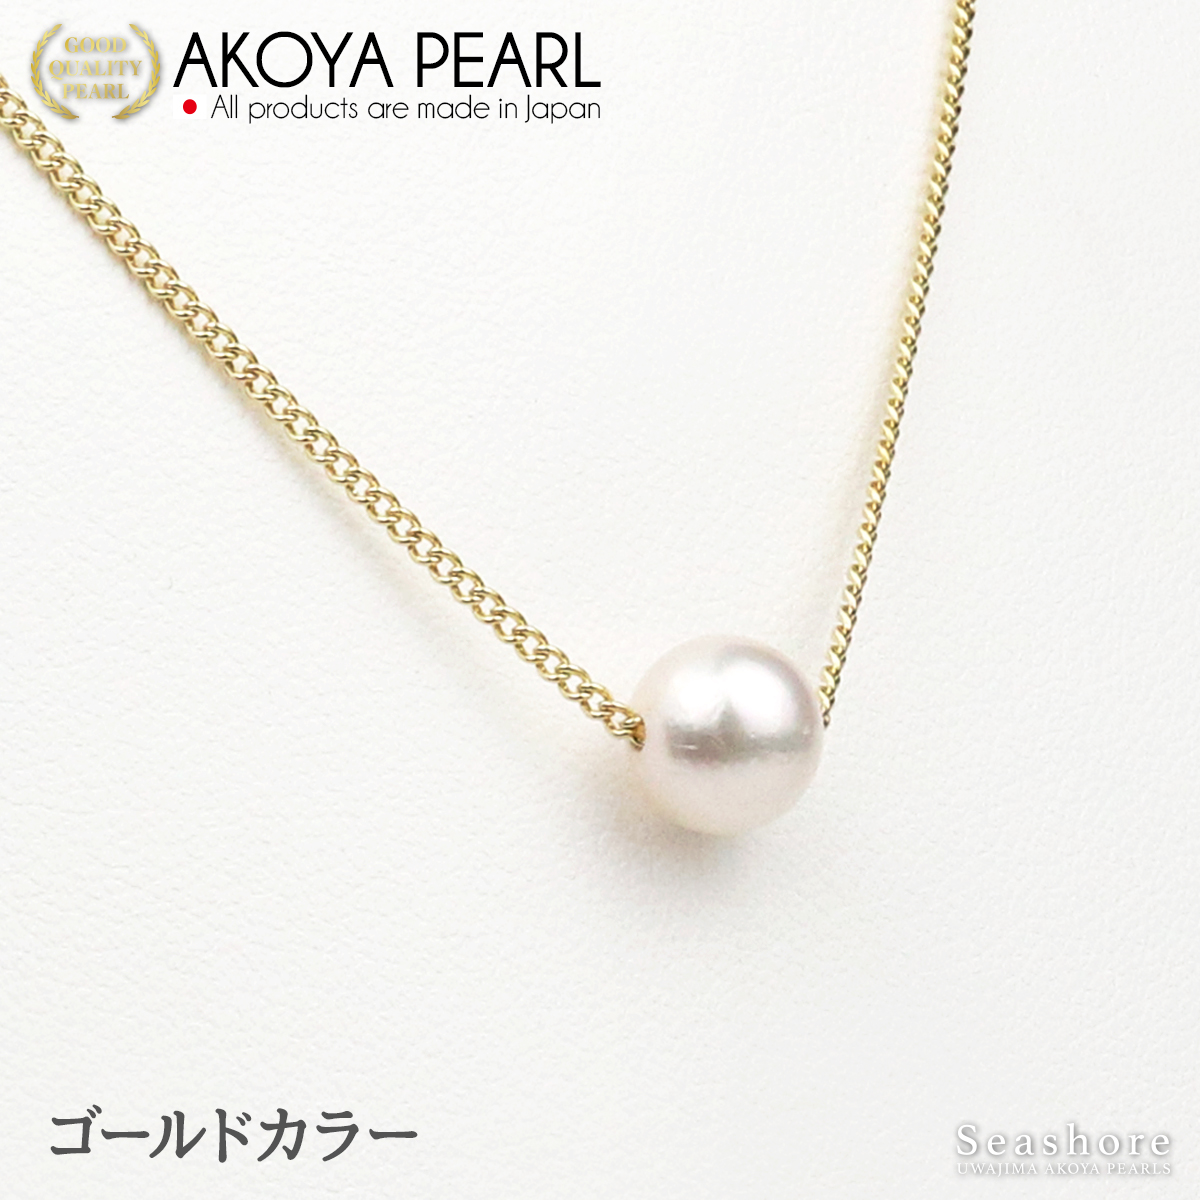 真珠 一粒 ネックレス レディース ホワイト 7.0-8.0mm 真鍮 全３色 当店発送 あこや アコヤ パール